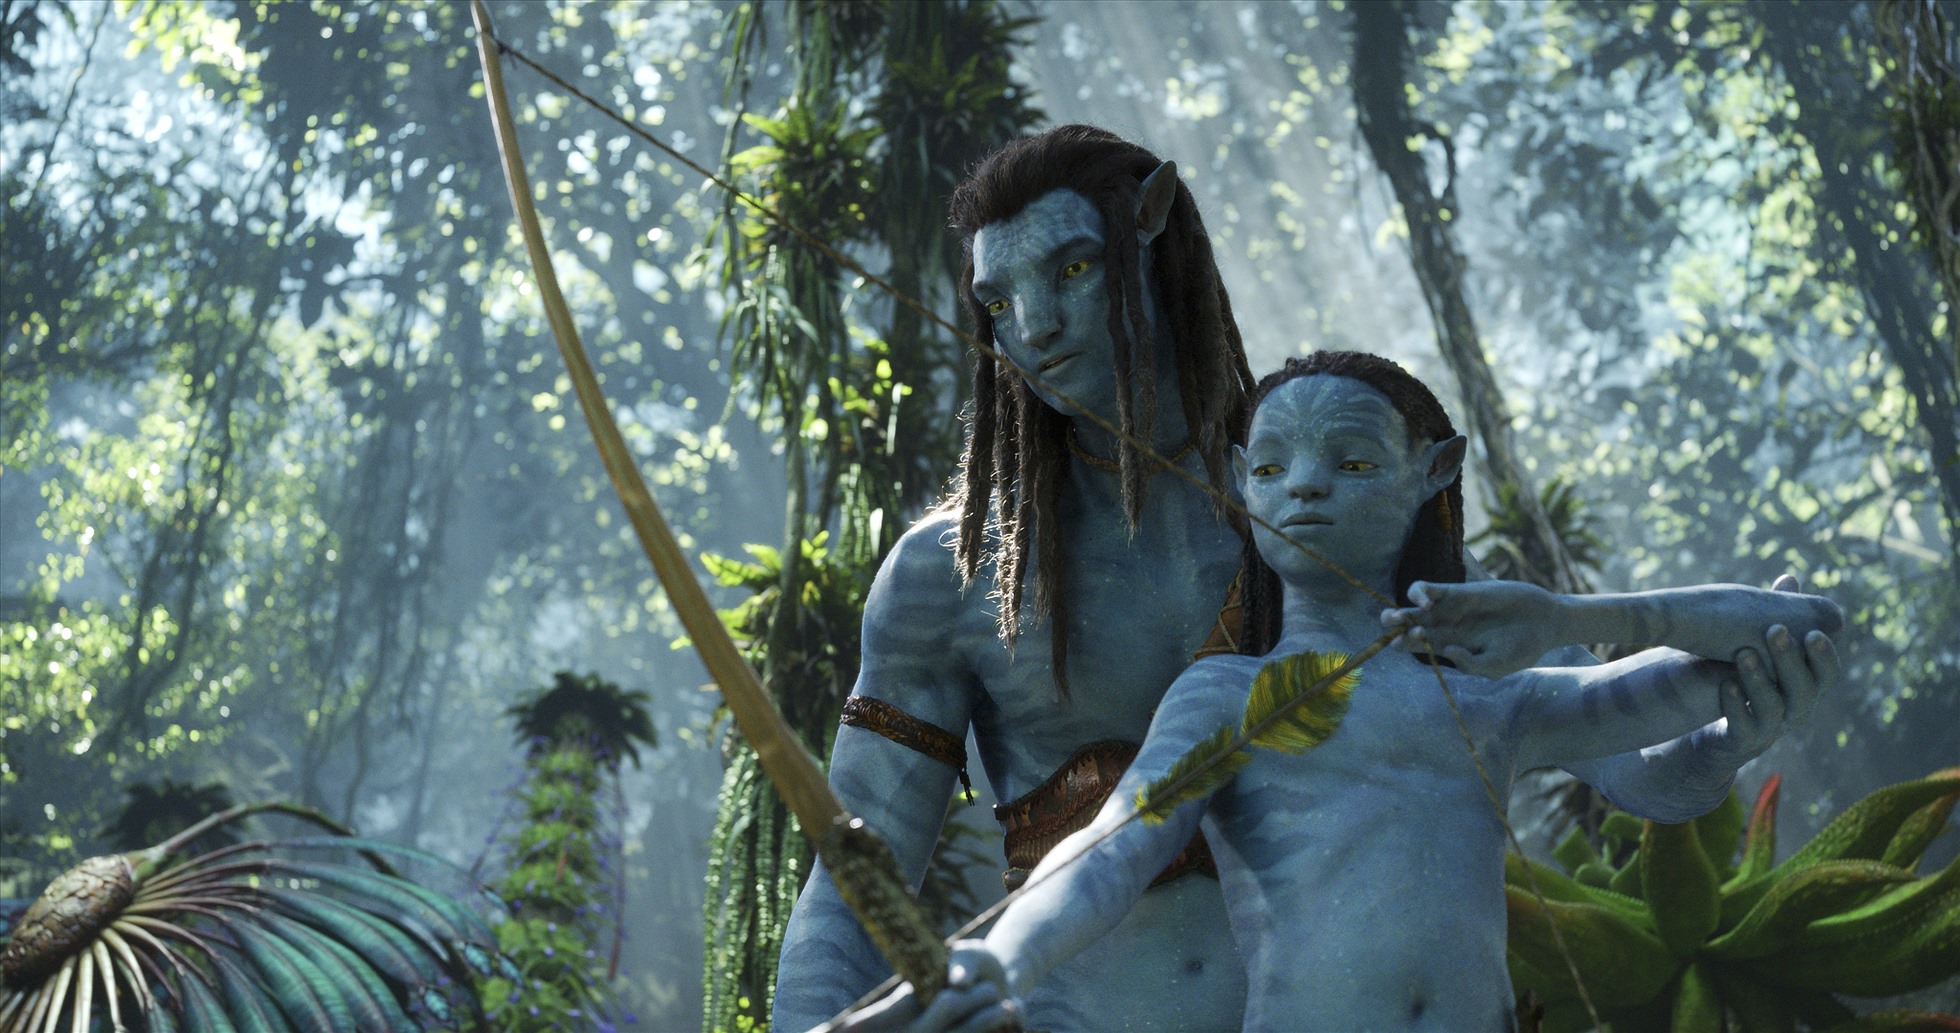 Bộ phim được mong đợi từ lâu của đạo diễn James Cameron đã sẵn sàng đưa khán giả vào một cuộc phiêu lưu mới với câu chuyện đầy hứa hẹn. Với cảnh quay đẹp mắt và hiệu ứng đặc biệt đỉnh cao, Avatar 2 chắc chắn sẽ khiến khán giả sửng sốt và thích thú.